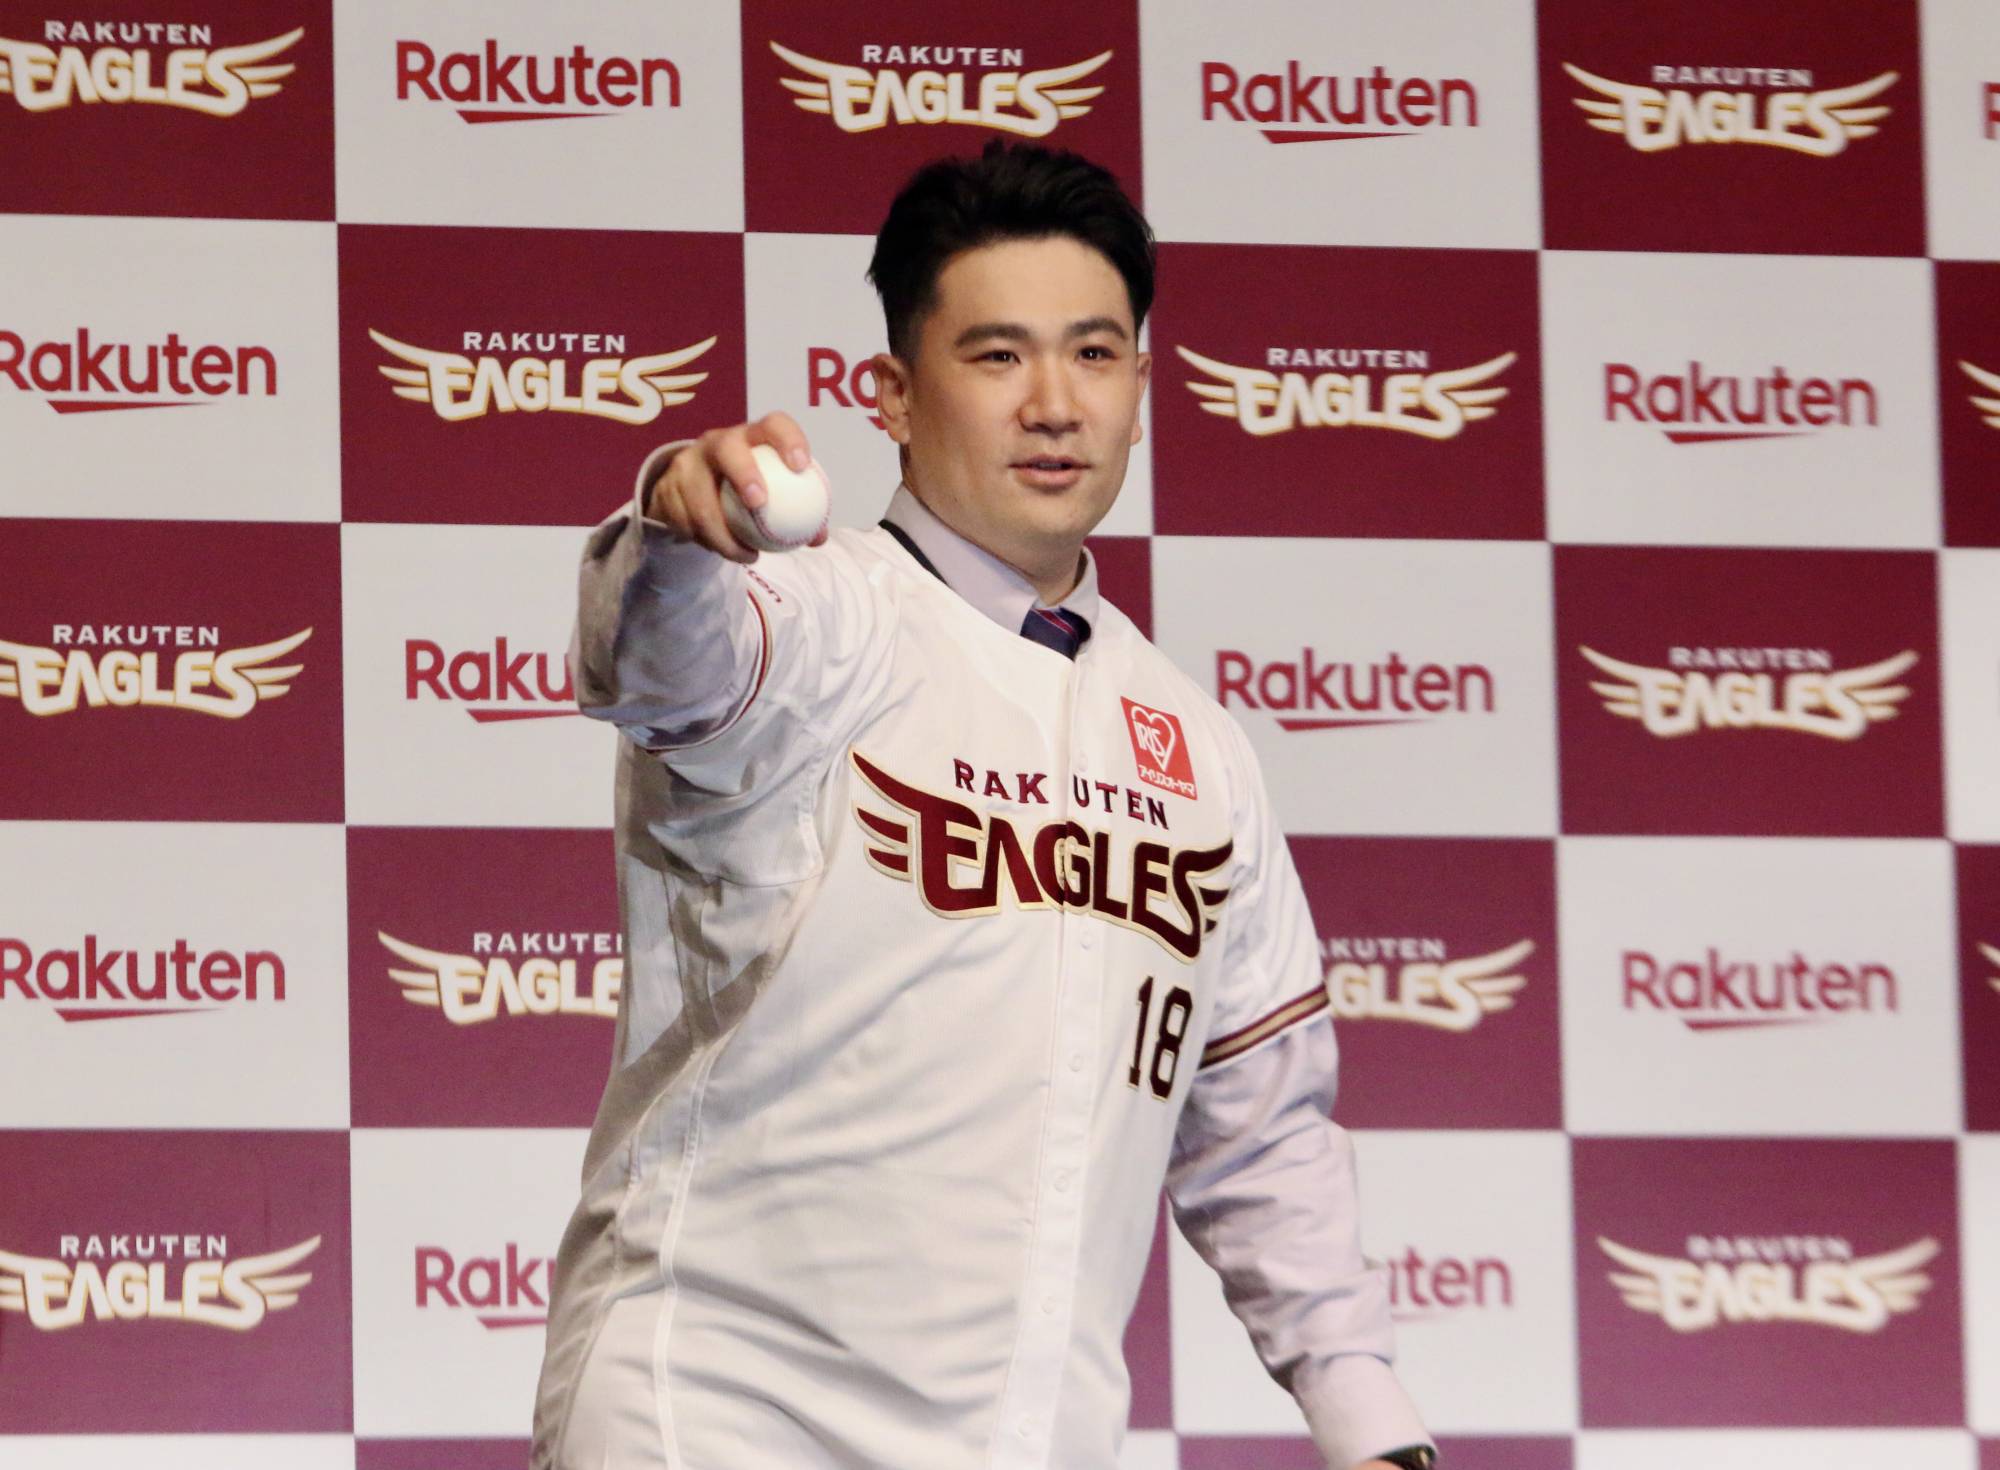 BASEBALL, Masahiro Tanaka Makes Timely Return to Rakuten Eagles